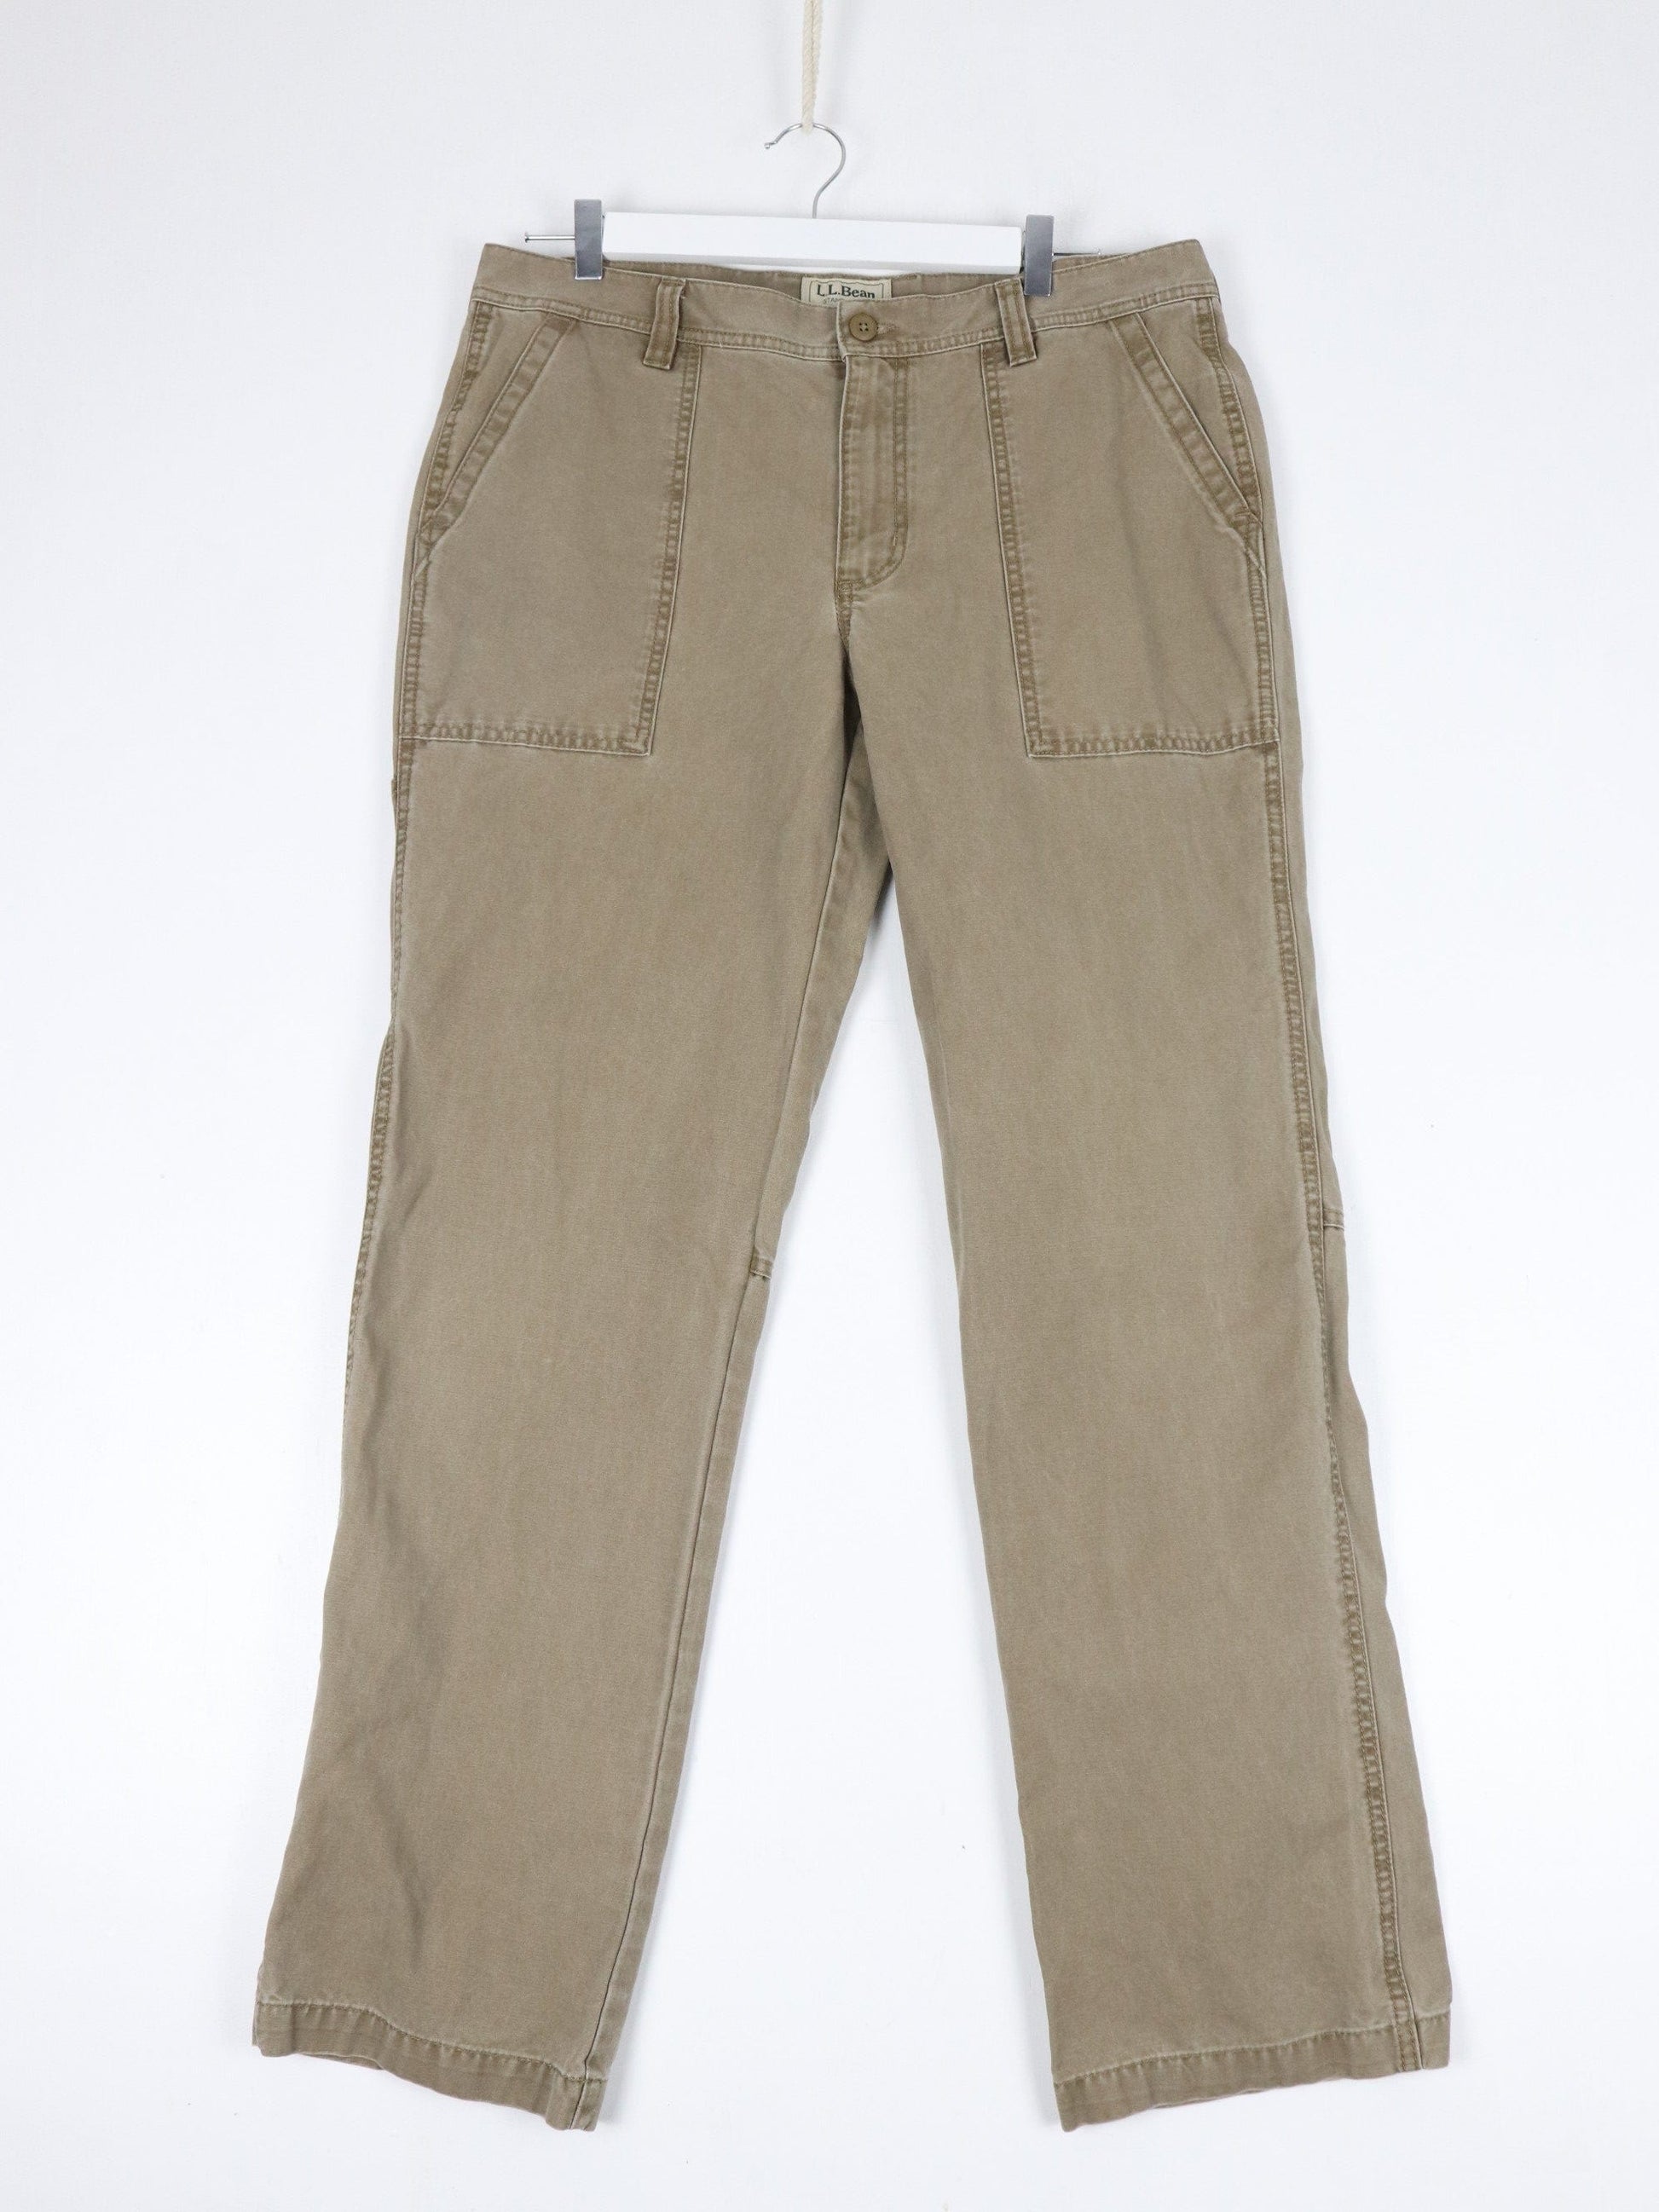 L.L. Bean Pants Vintage L.L. Bean Pants Mens 36 x 32 Brown Standard Fit